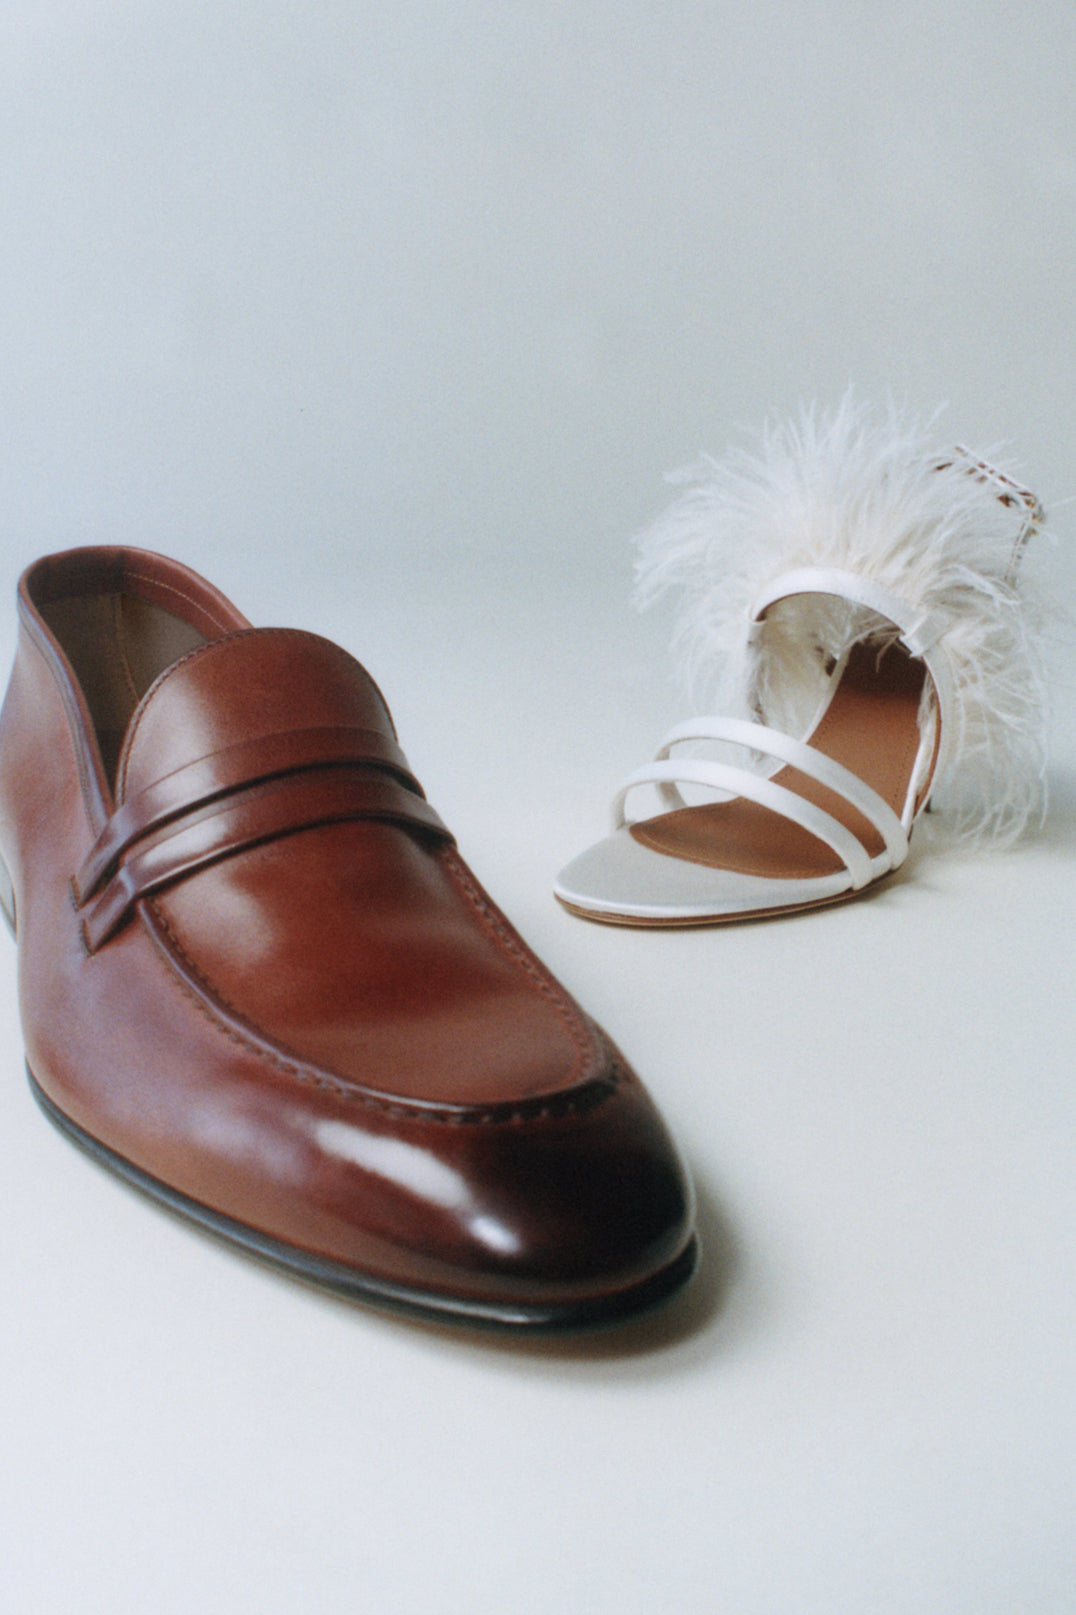 Sole Searching  Men's wedding shoes, Louis vuitton men shoes, Groom shoes